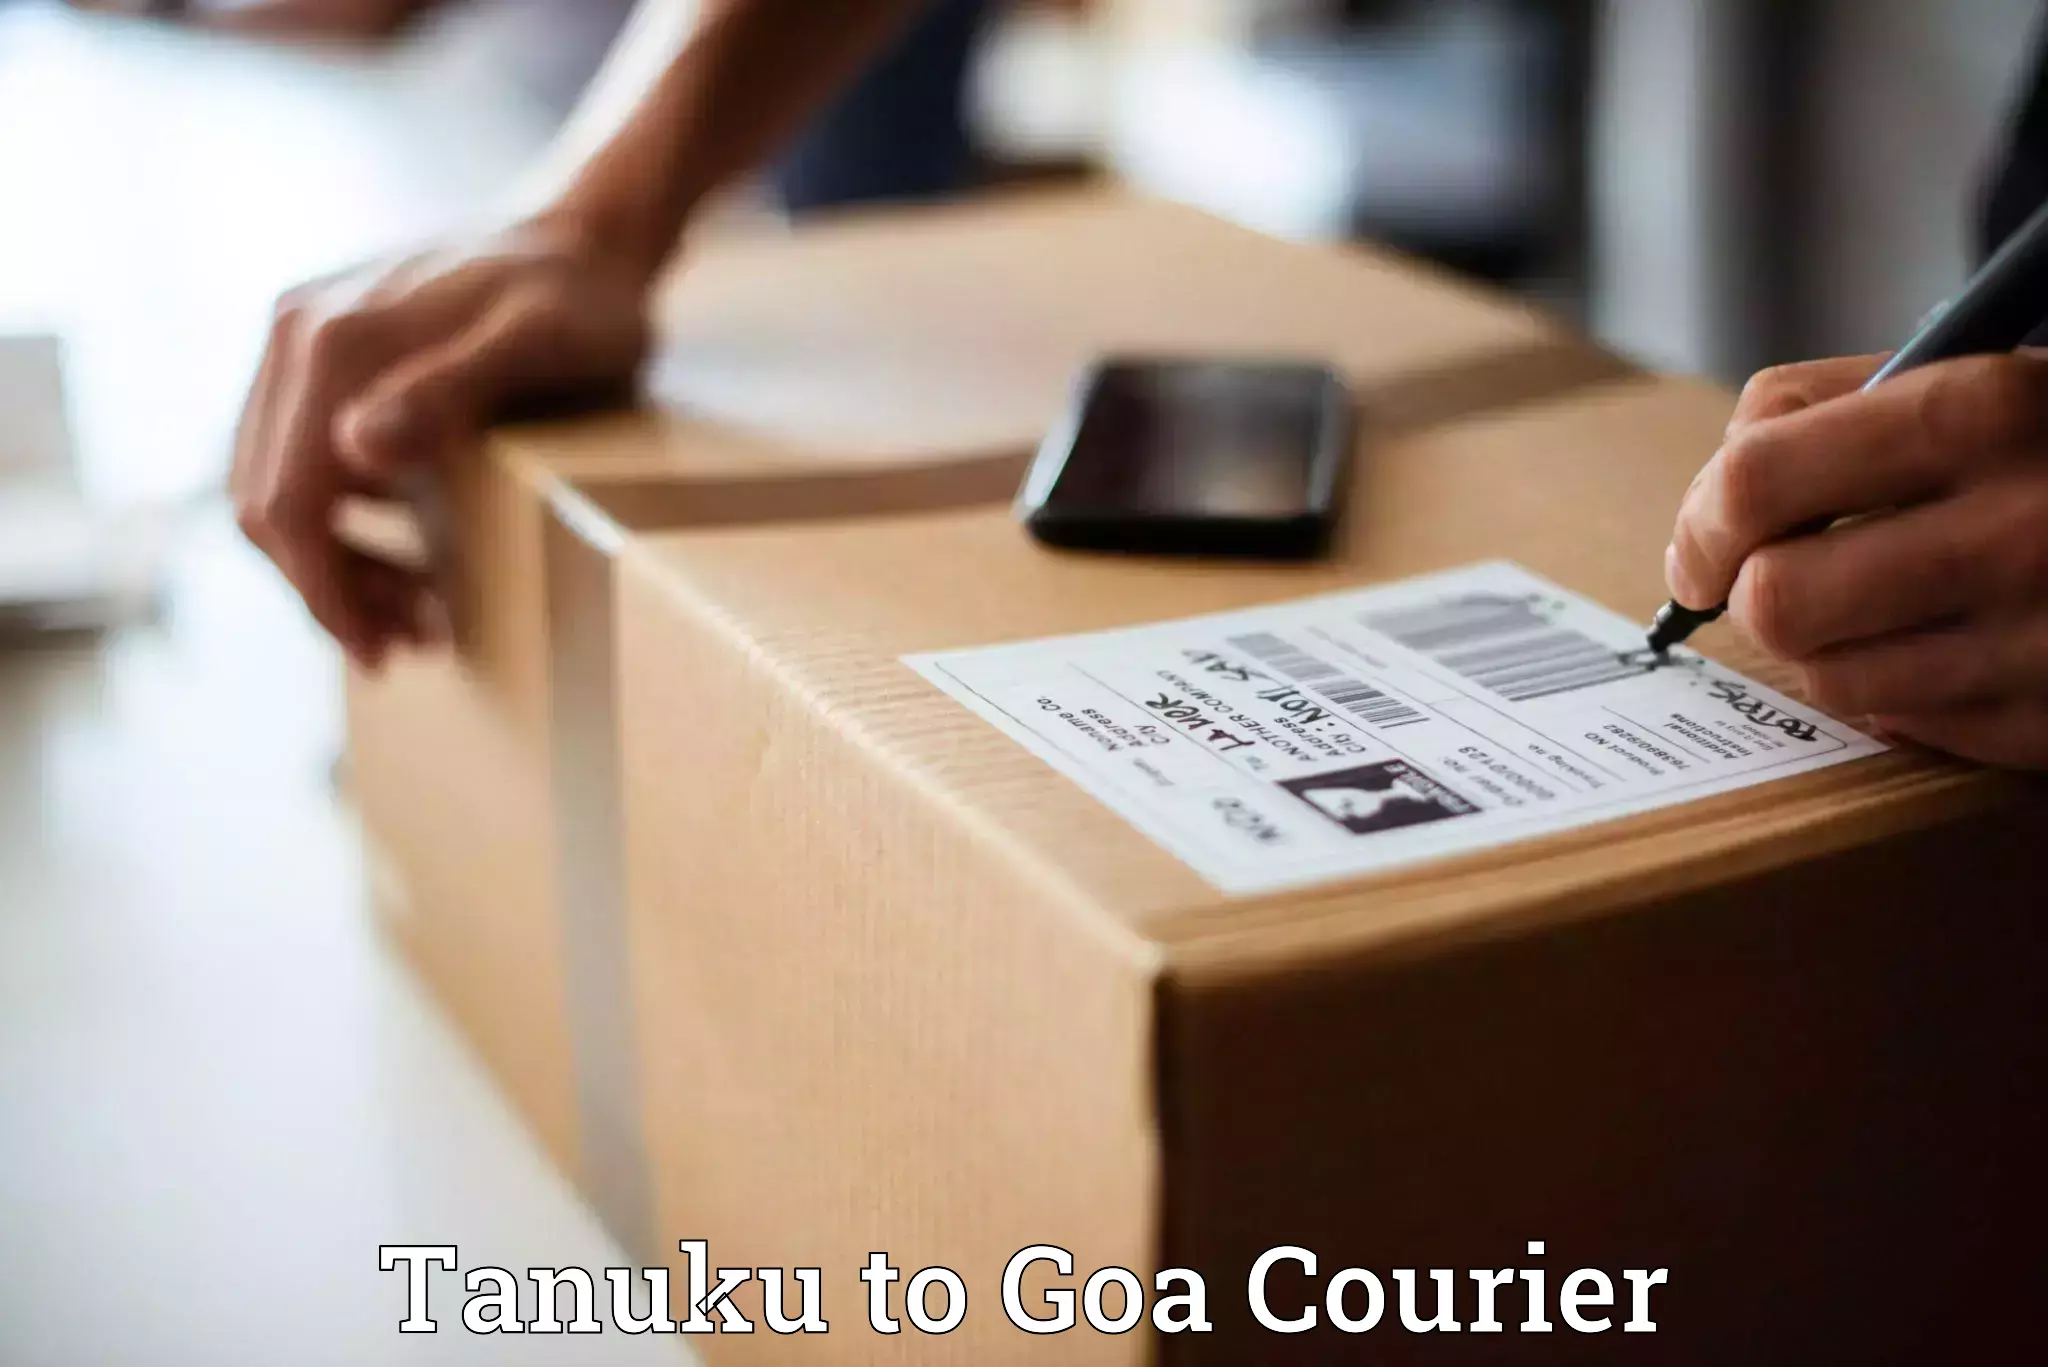 Logistics service provider Tanuku to Vasco da Gama